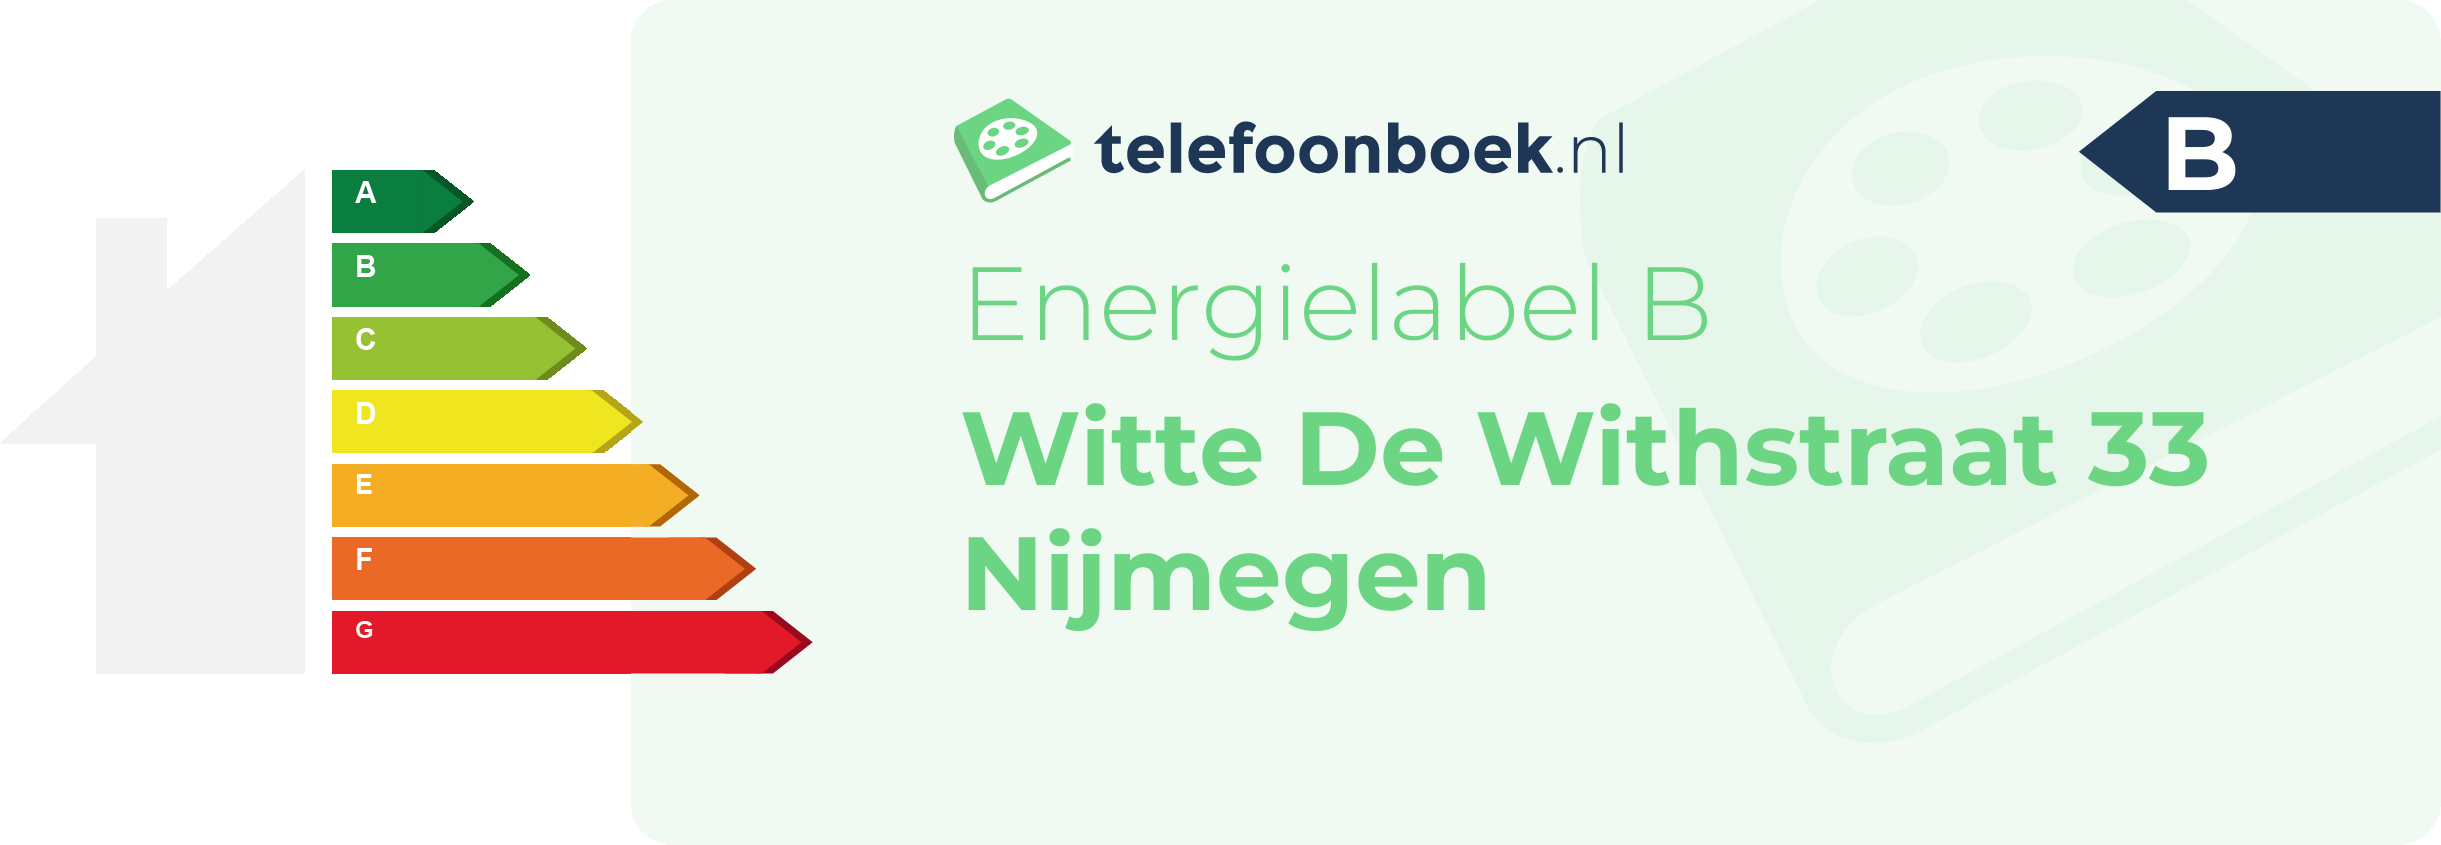 Energielabel Witte De Withstraat 33 Nijmegen